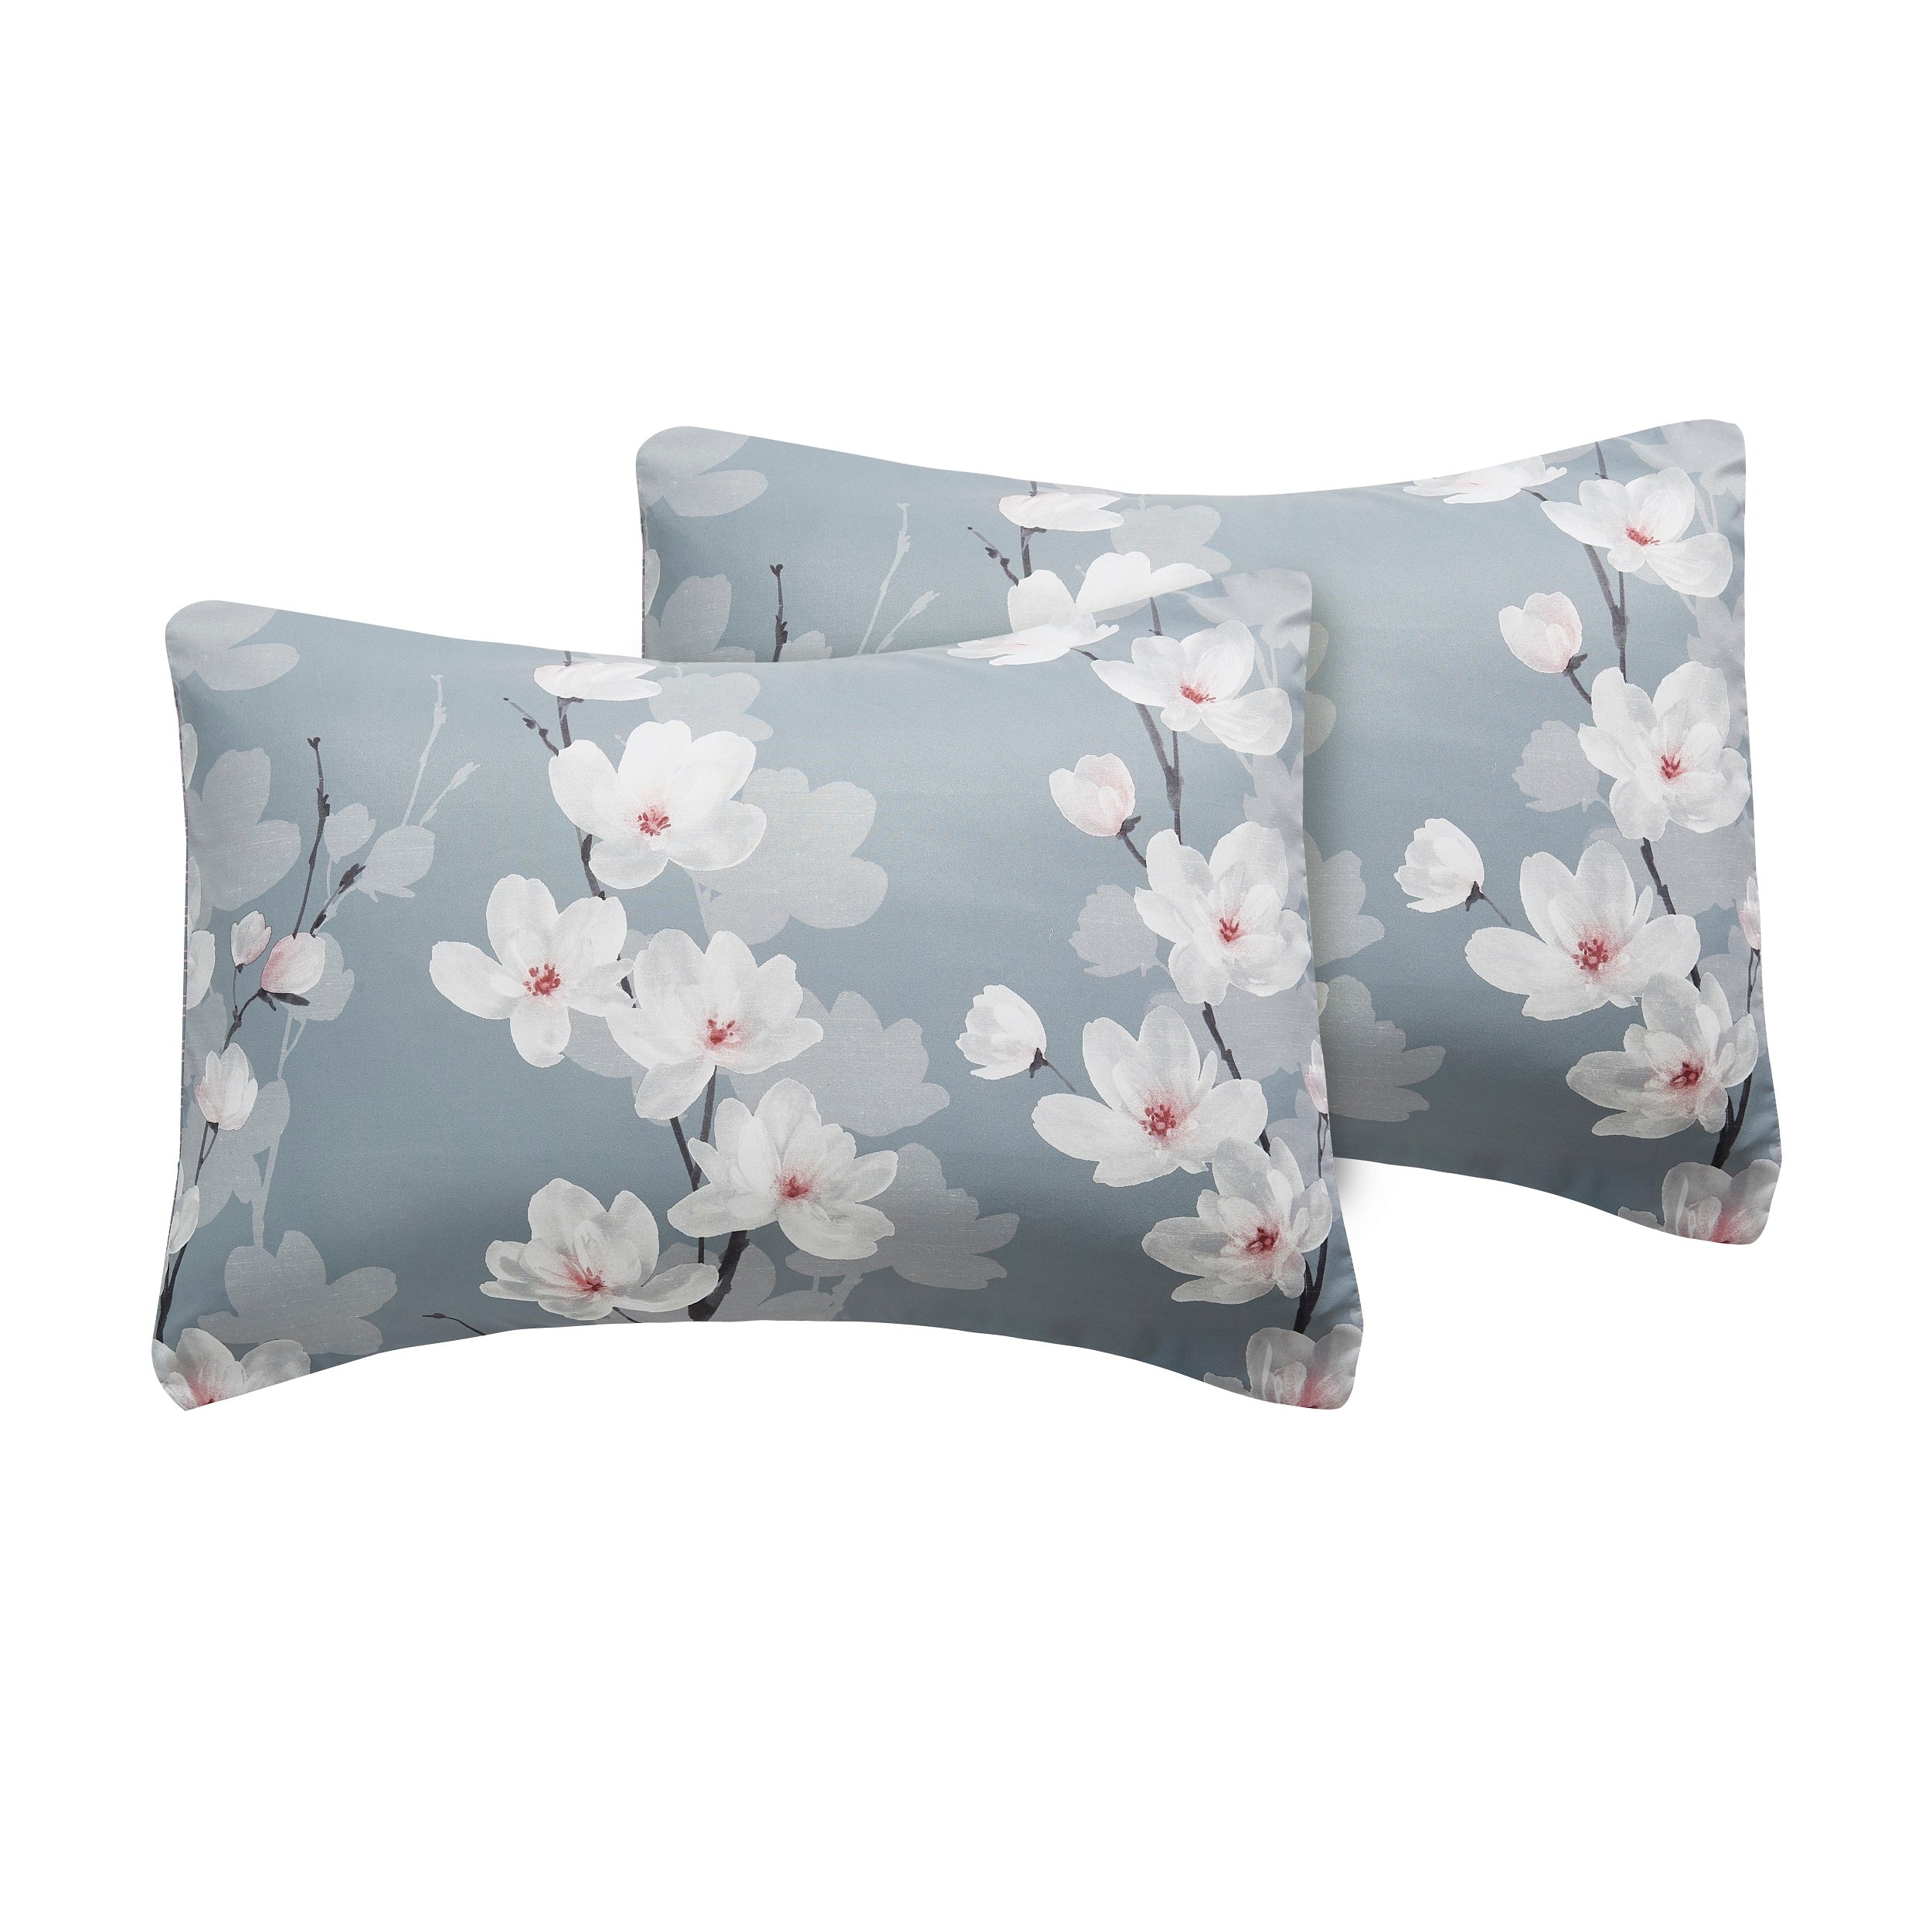 Isabel 7-Piece Grey Floral Queen Comforter Set